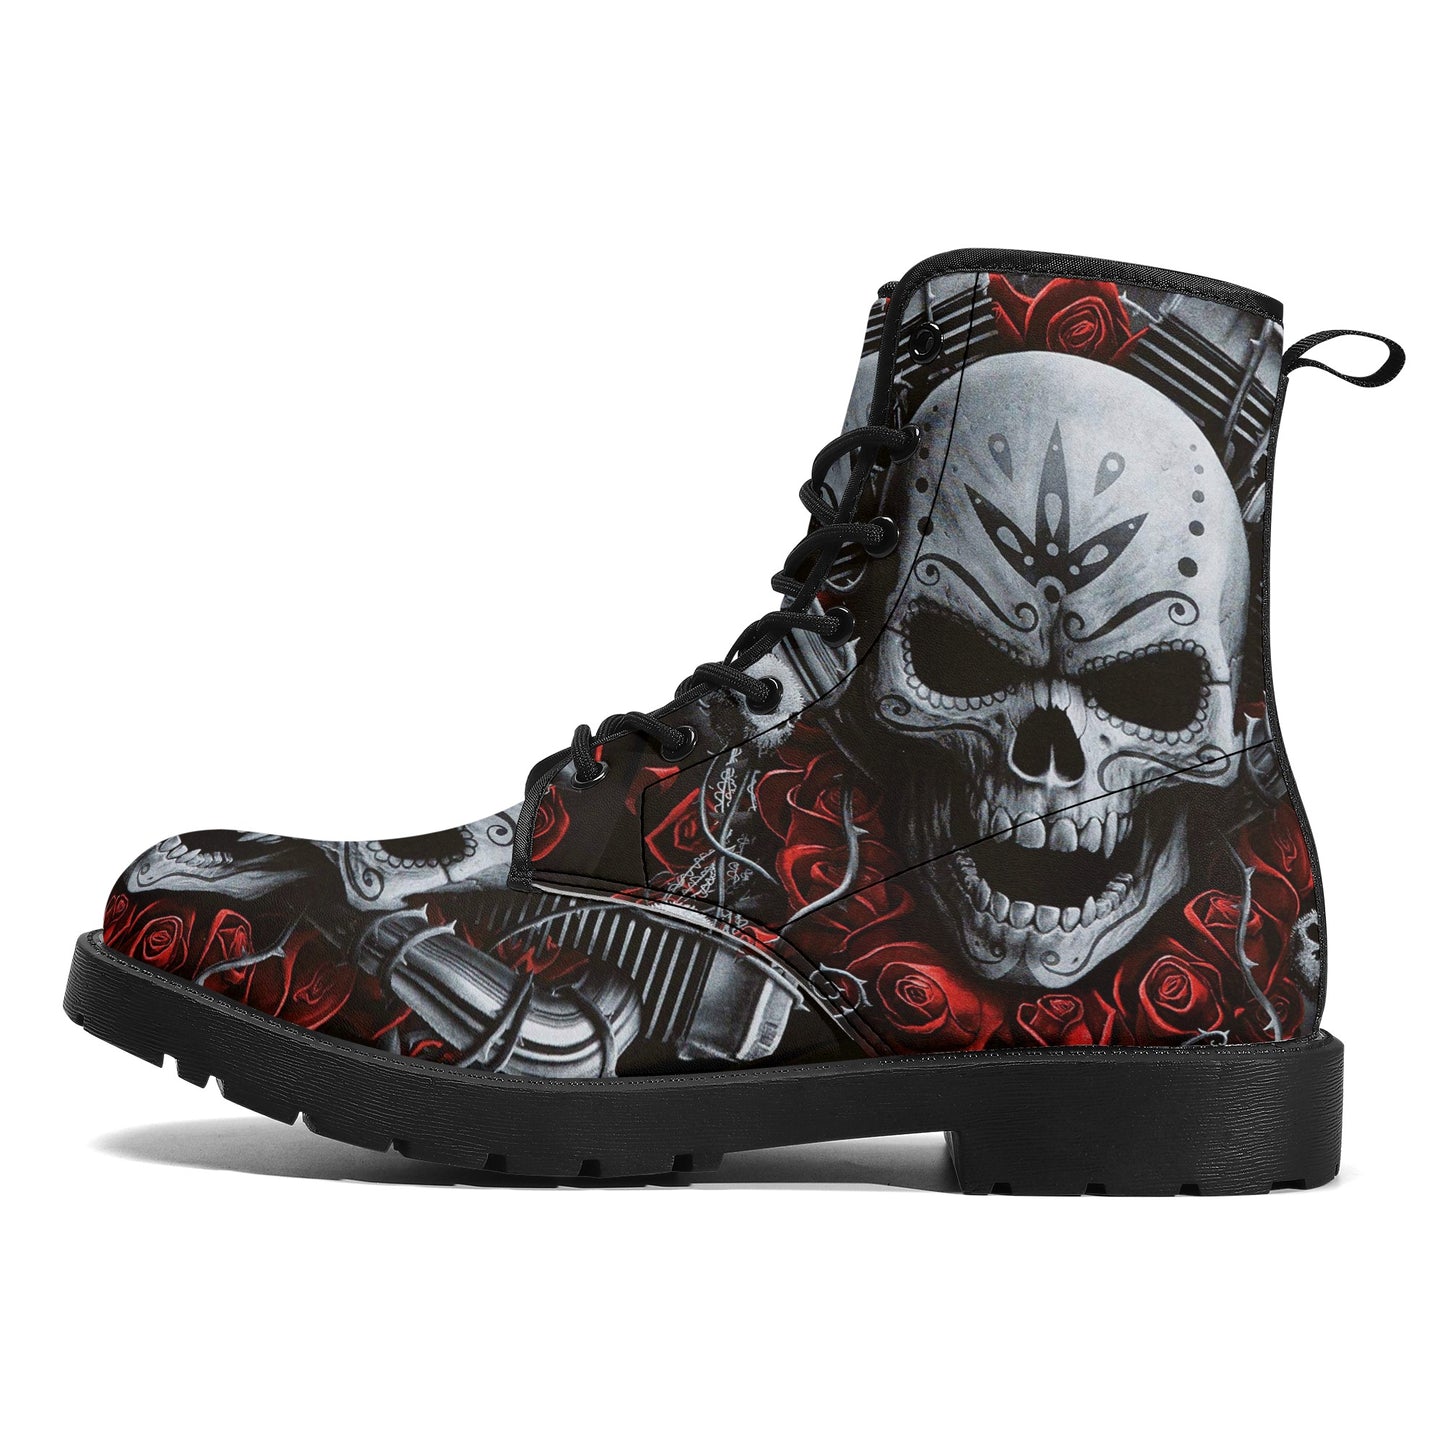 Skull boots, sugar skull boots, candy skull Halloween boots